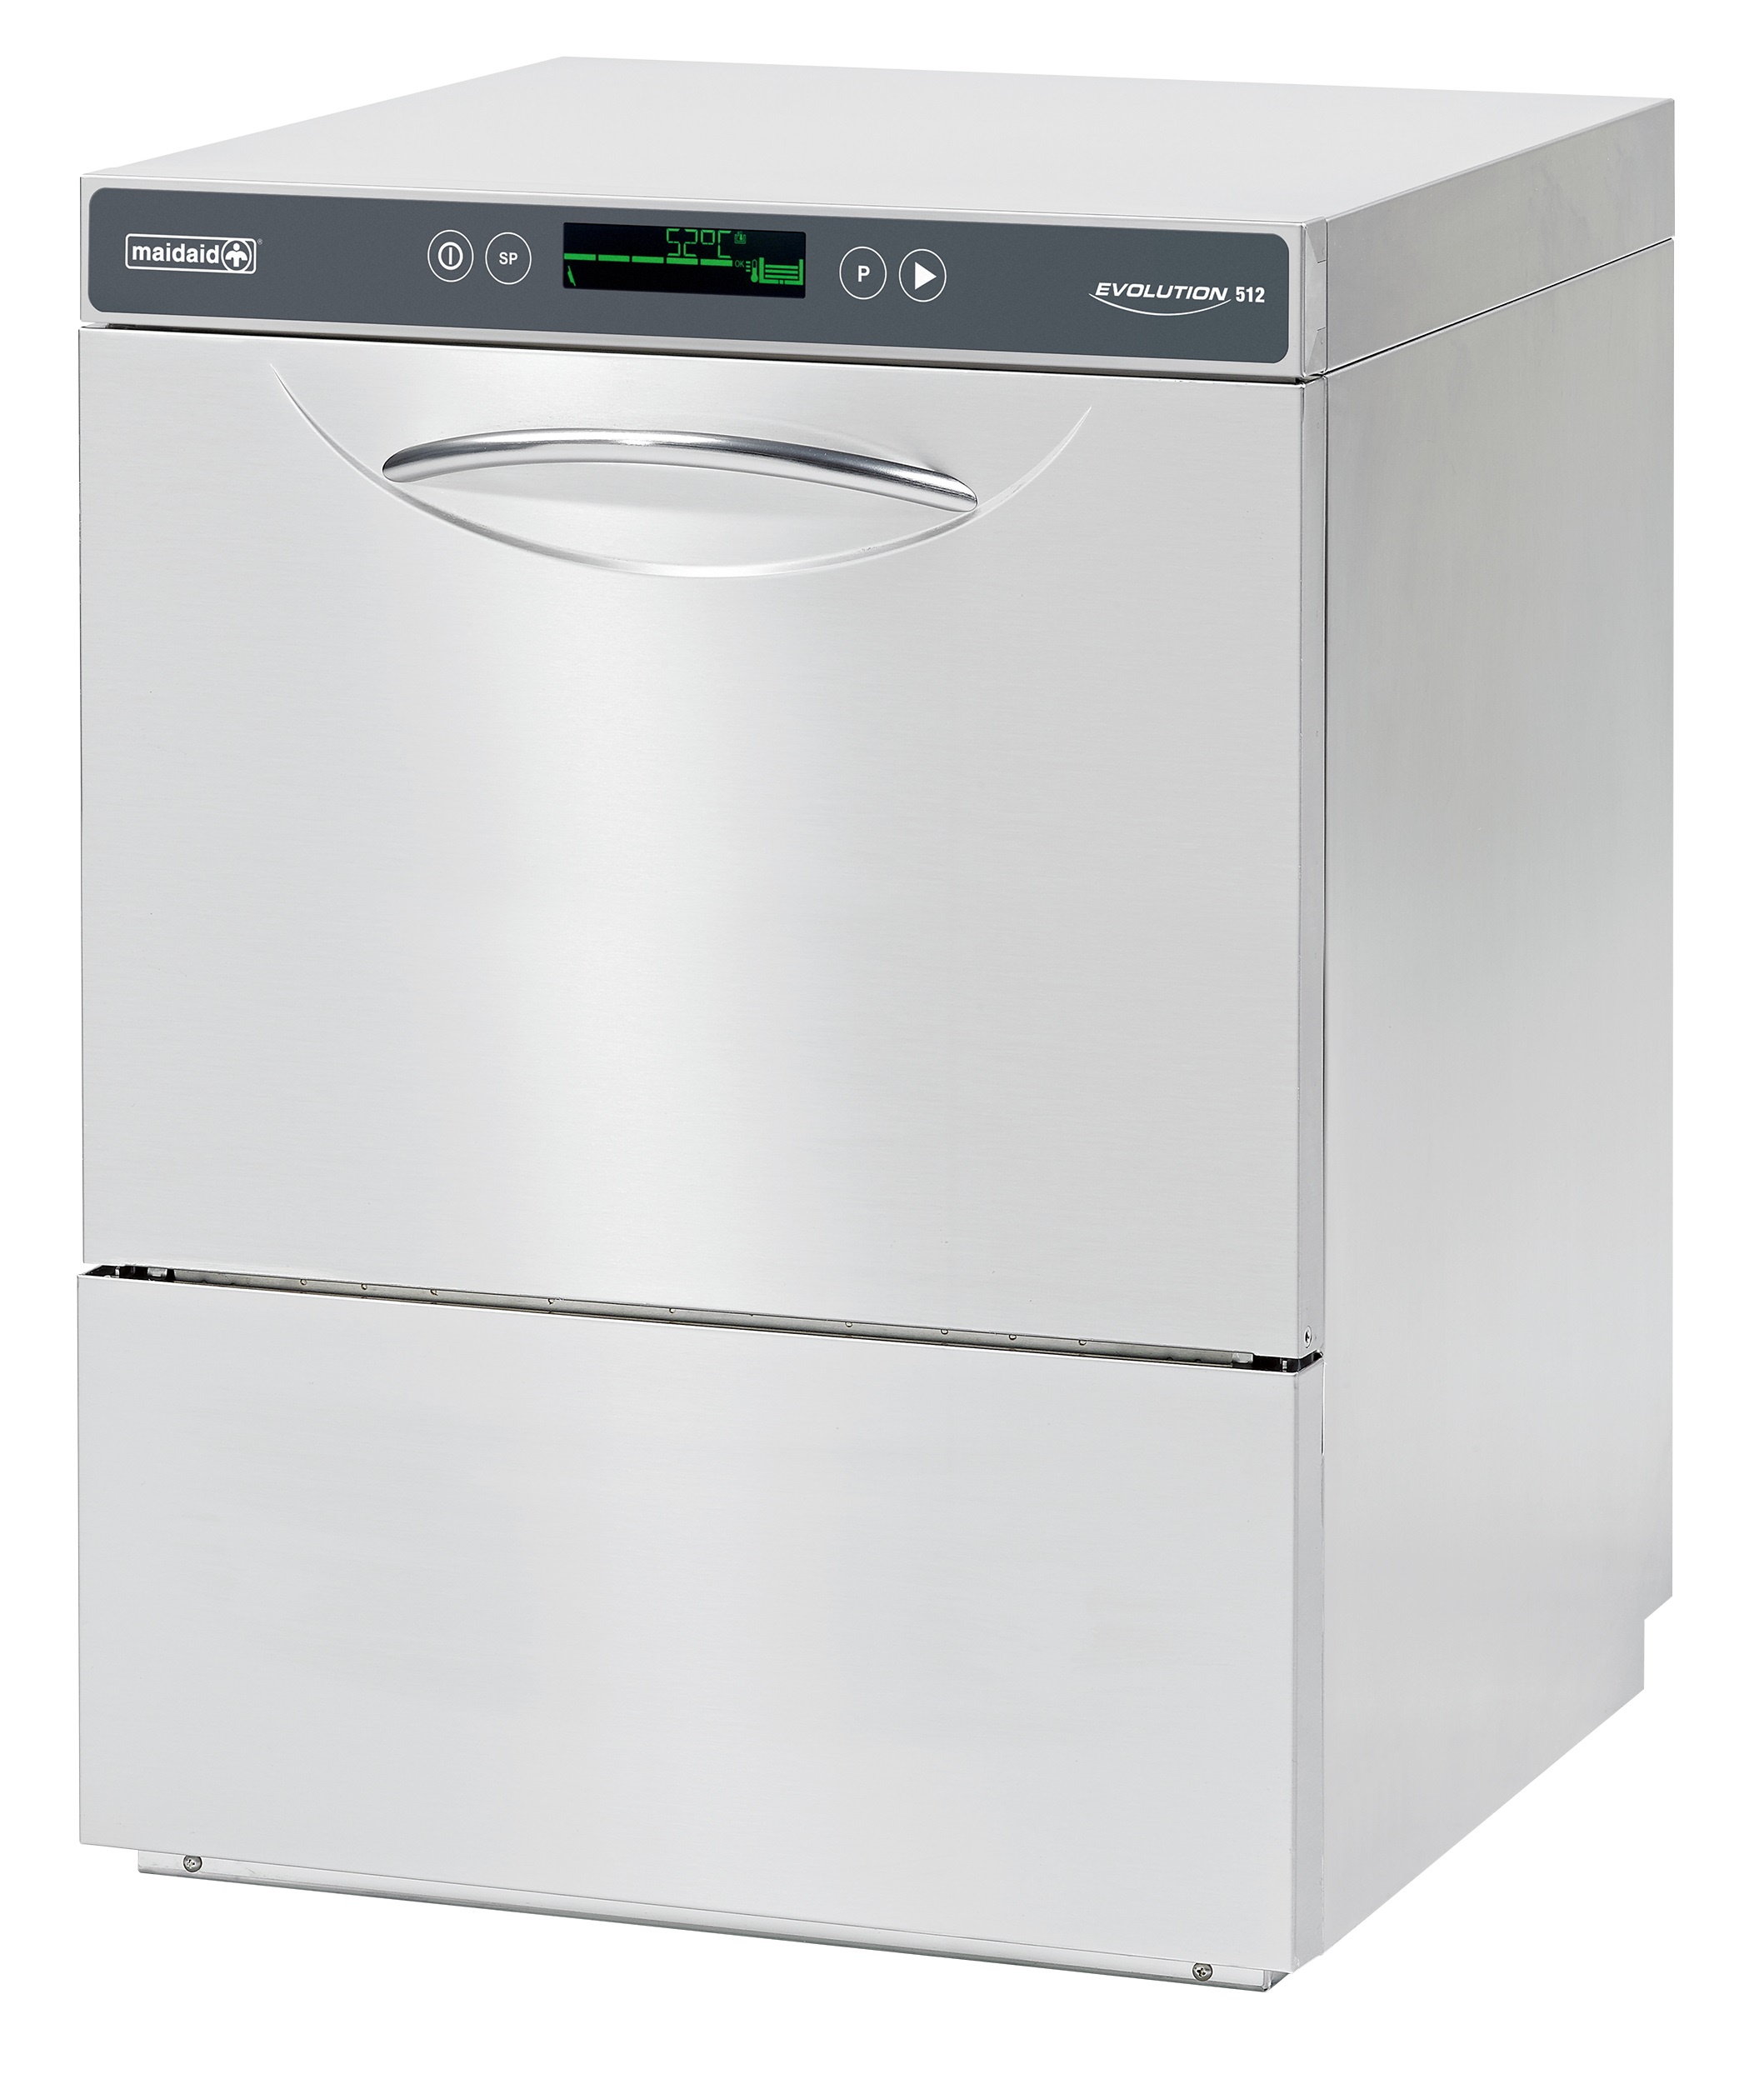 Maidaid Evolution 512 Undercounter Dishwasher